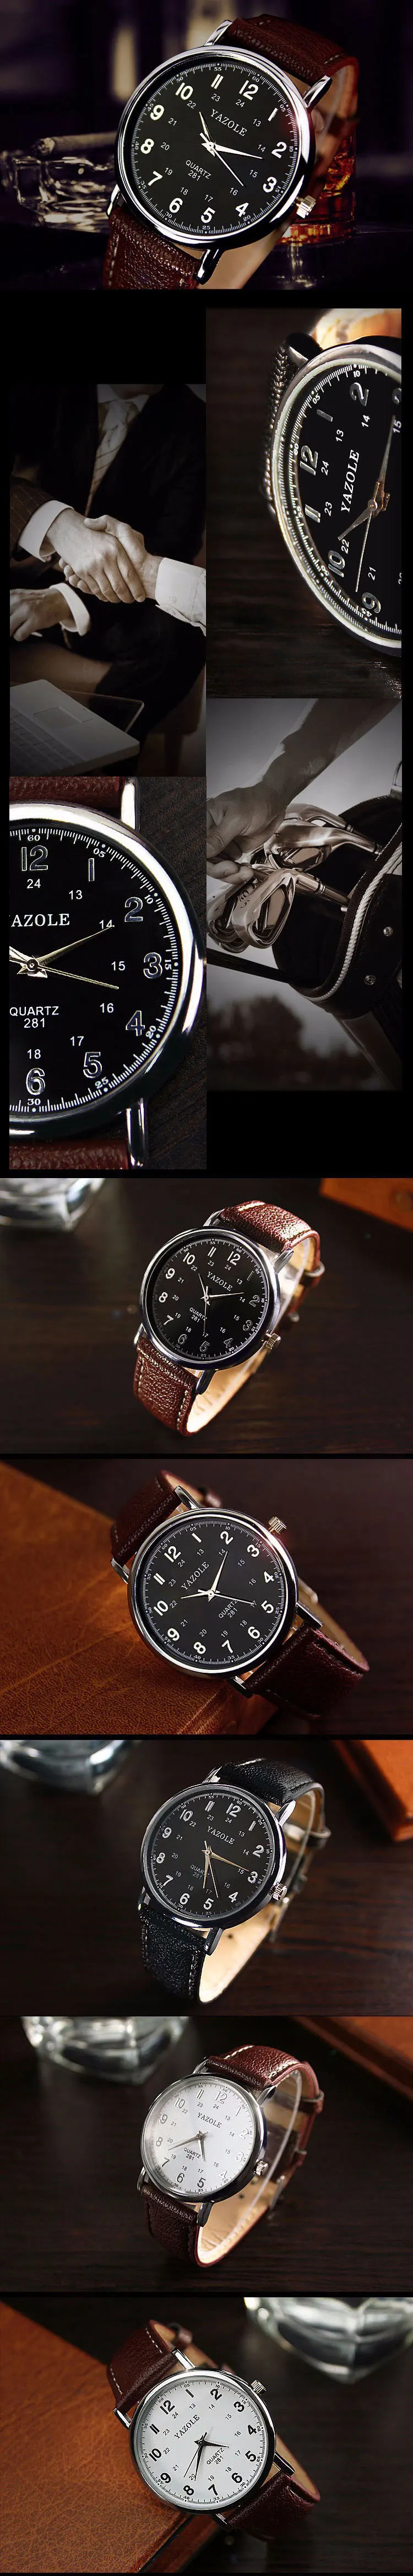 Yazole кварцевые наручные часы Для мужчин Часы лучший бренд класса люкс известный наручные часы для мужчин часы Relogio masculino relog Для мужчин hodinky часы мужскиемужские часы часы мужские наручные